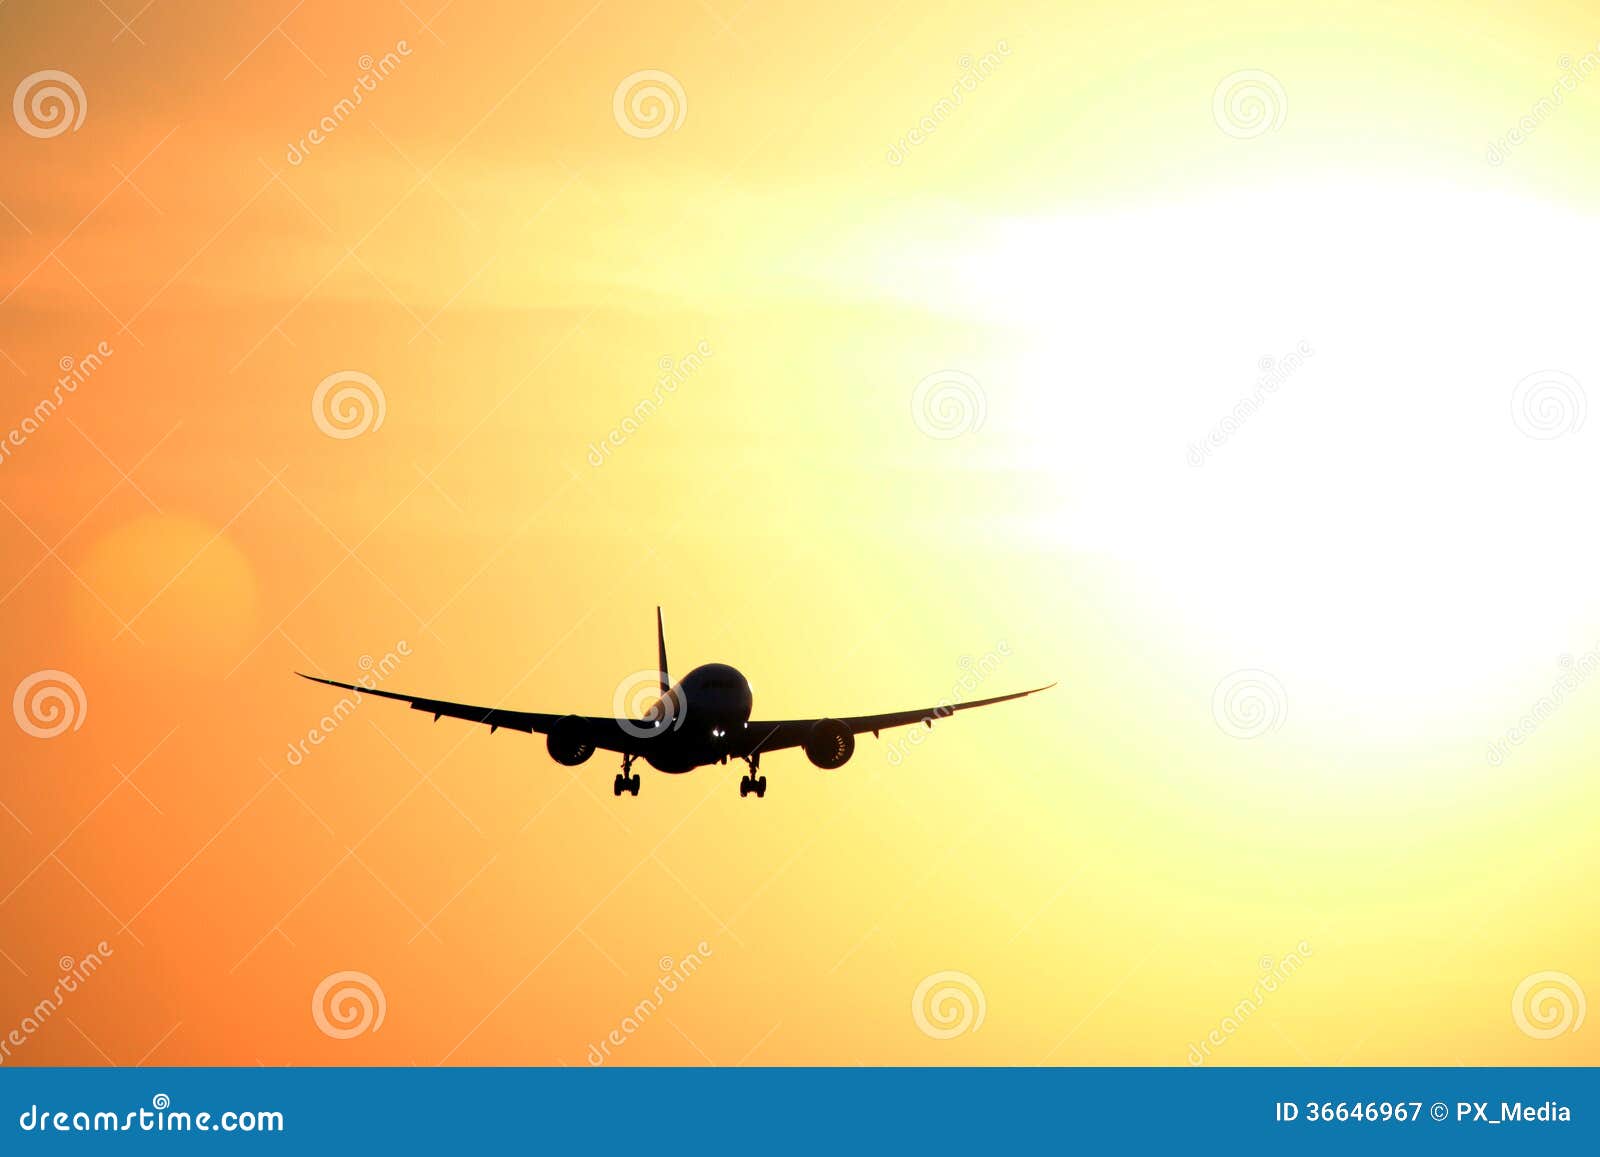 jet plane, flying, sunset